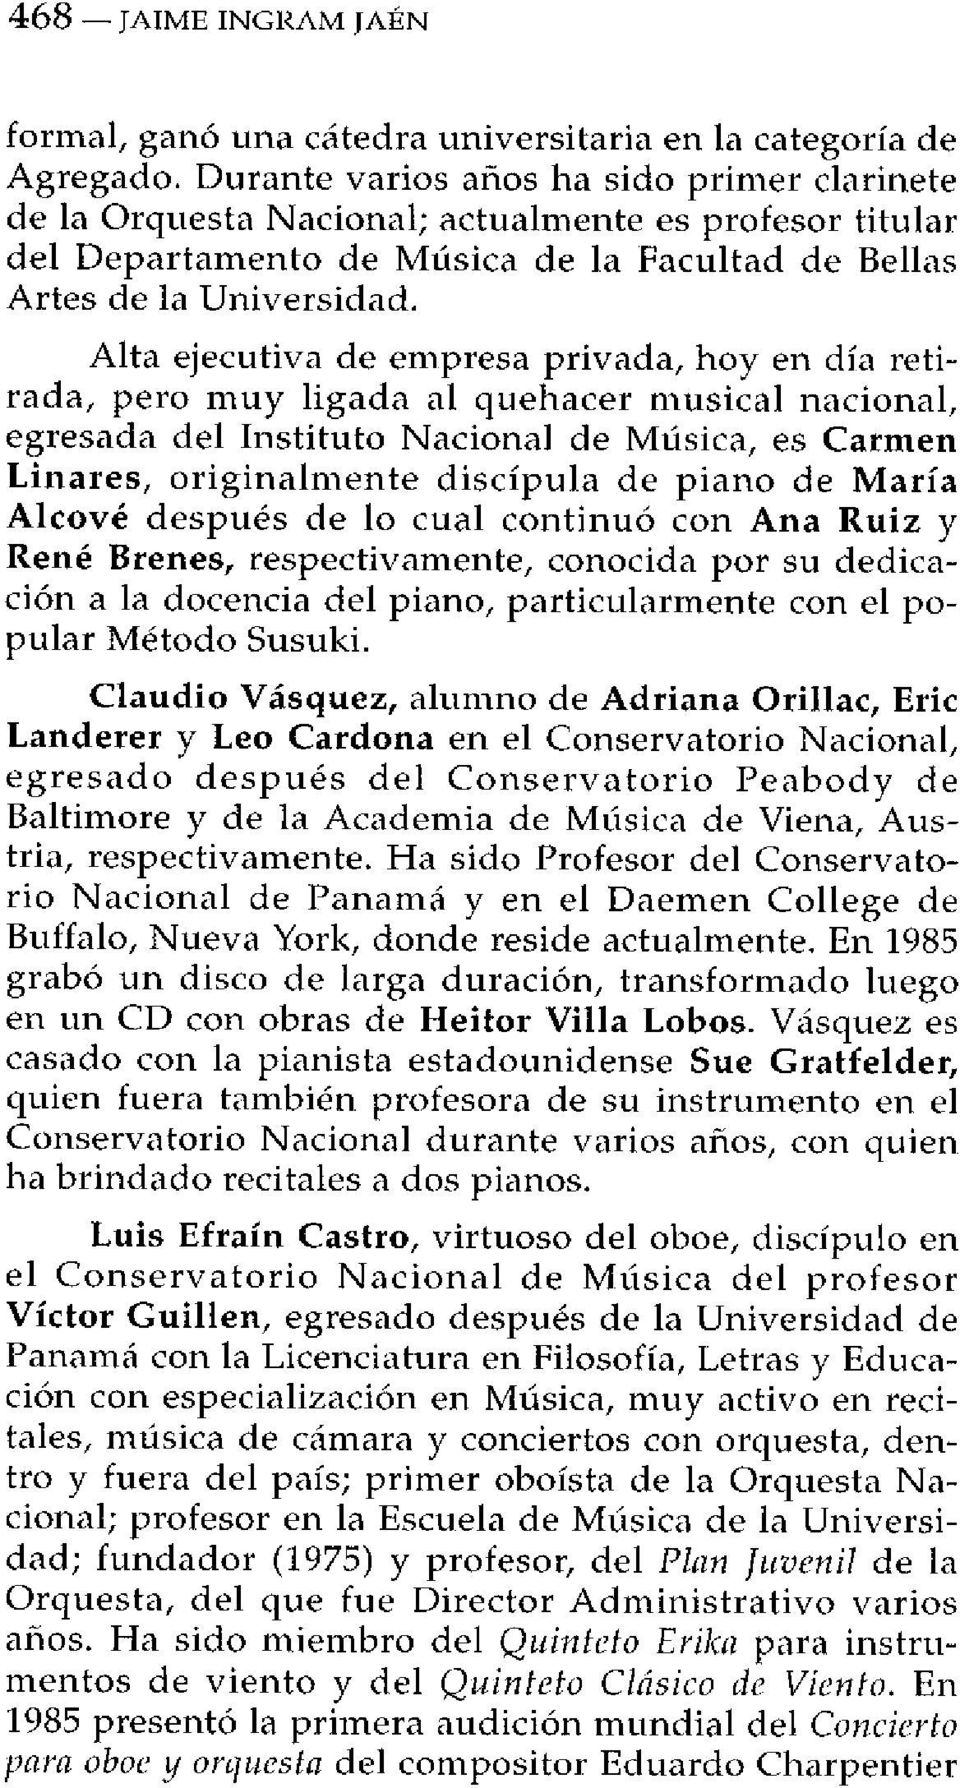 Alta ejecutiva de empresa privada, hoy en día retirada, pero muy ligada al quehacer musical nacional, egresada del Instituto Nacional de Música, es Carmen Linares, originalmente discípula de piano de